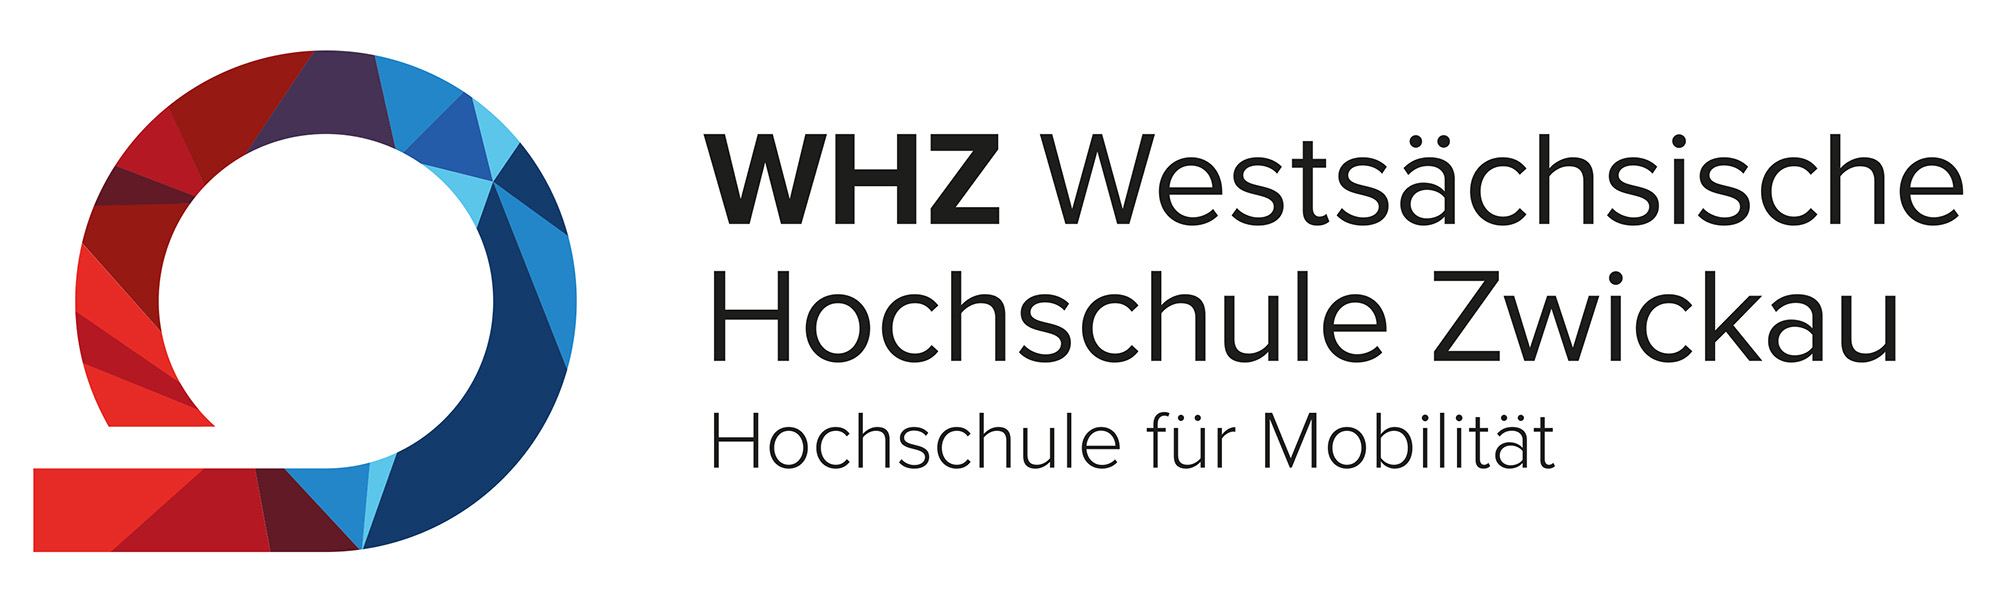 Logo: Westsächsische Hochschule Zwickau